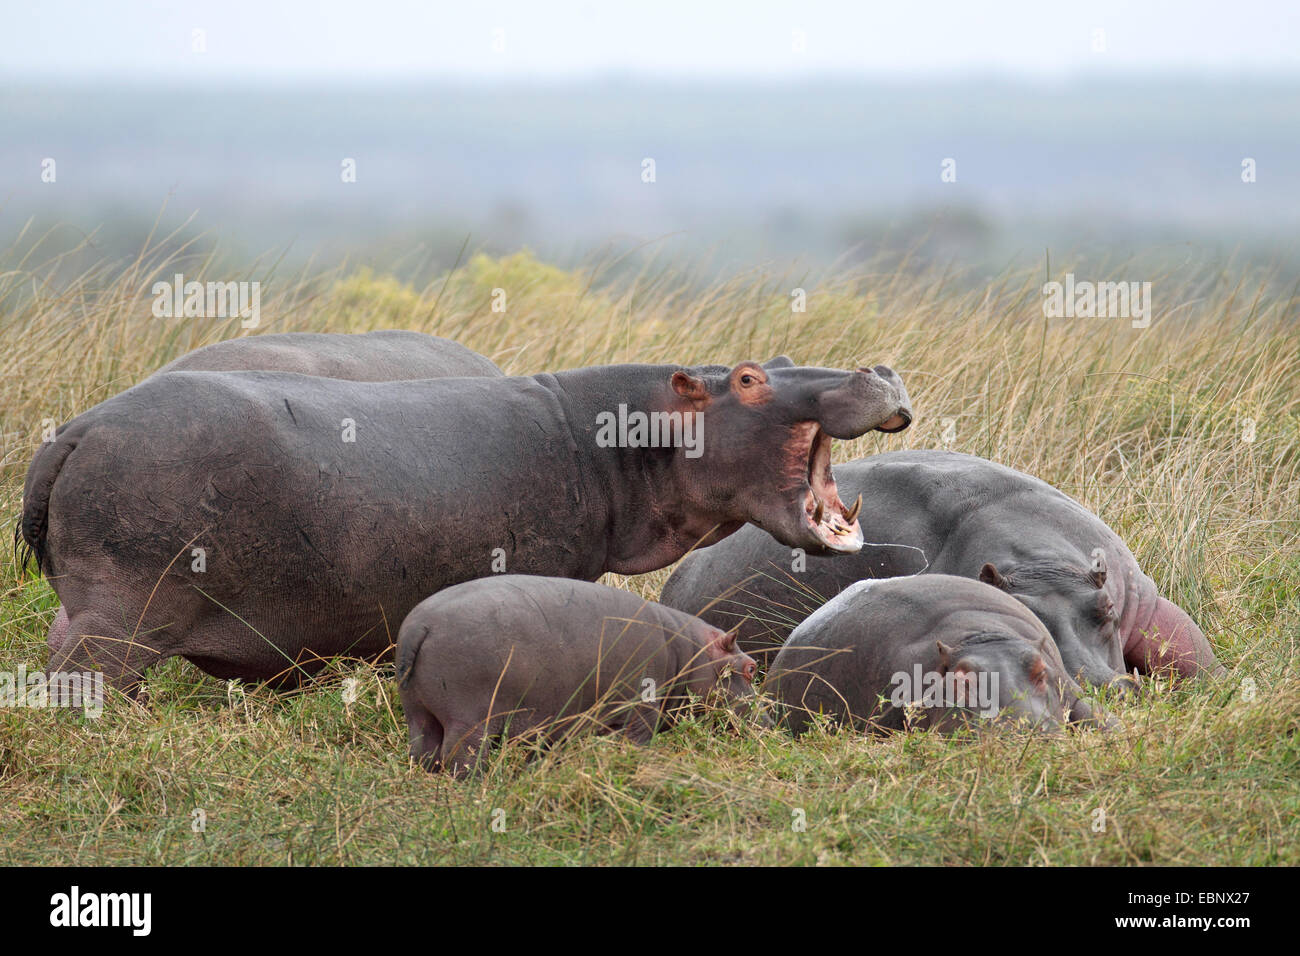 Nilpferd, Nilpferd, gemeinsame Flusspferd (Hippopotamus Amphibius), erwachsenes Tier mit offenem Mund, die Bewachung der Säuglinge, Südafrika, St.Lucia Stockfoto